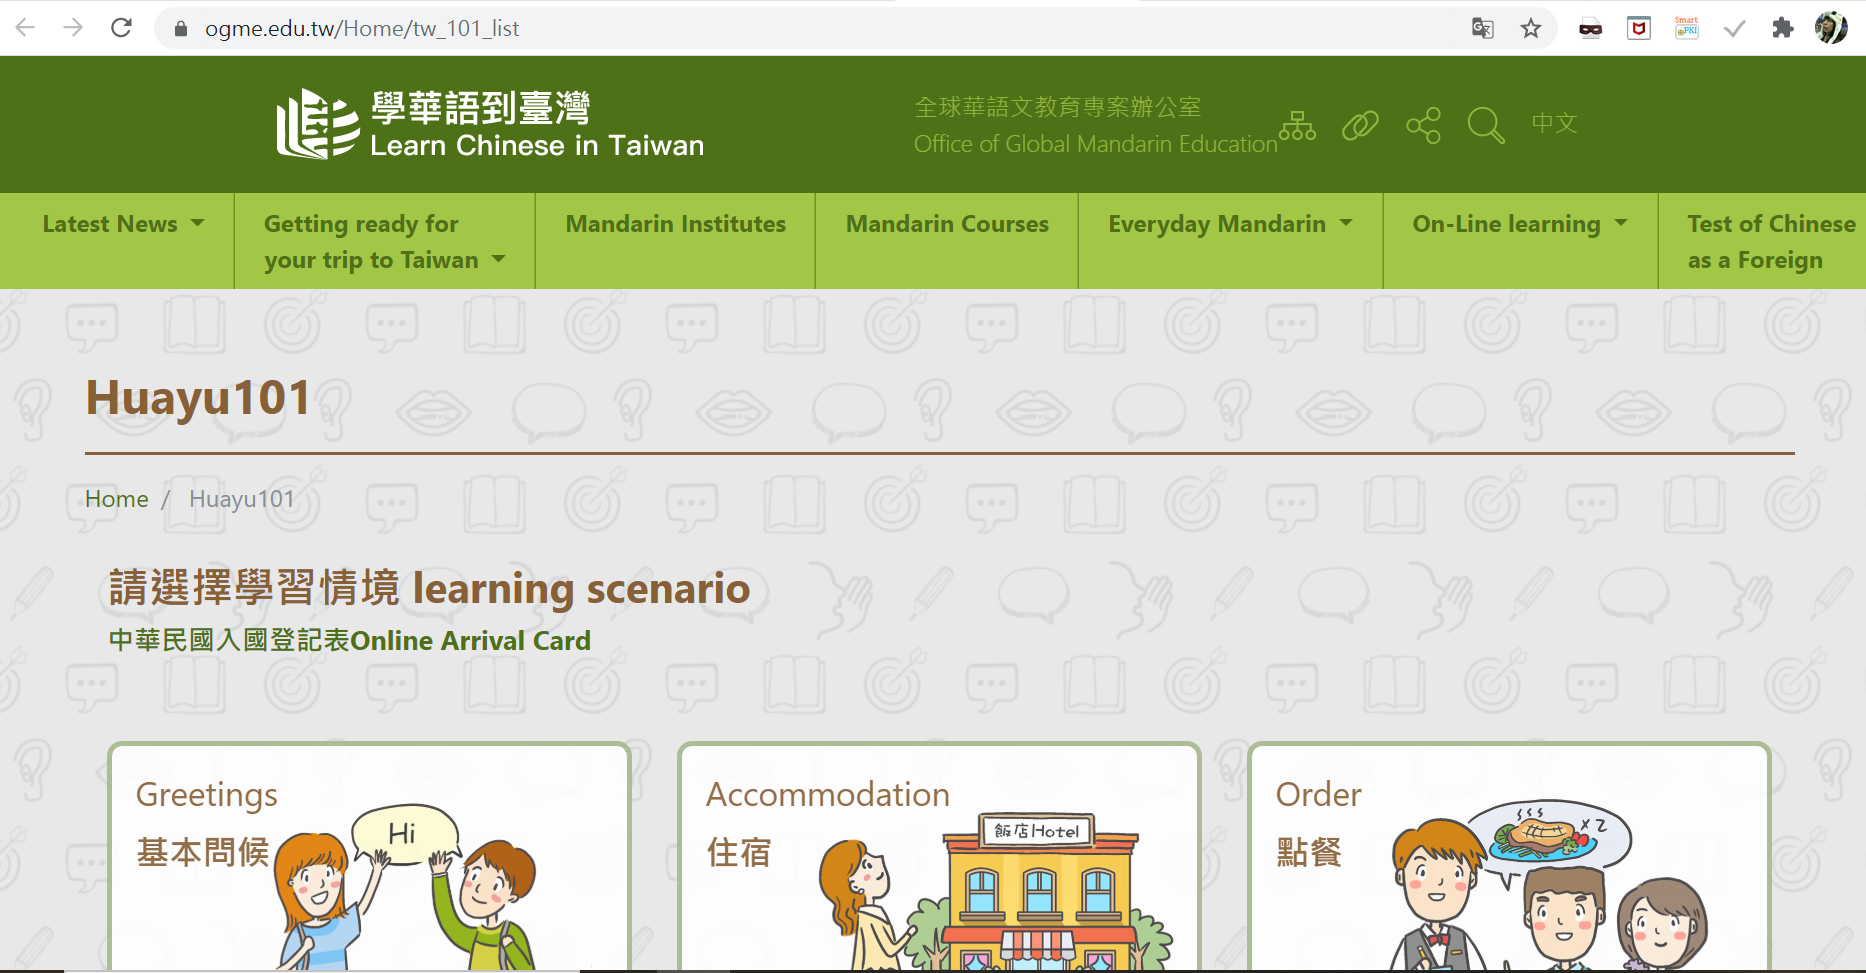 Website giáo trình học tiếng Hoa điện tử 101 (ảnh: giáo trình học tiếng Hoa điện tử 101